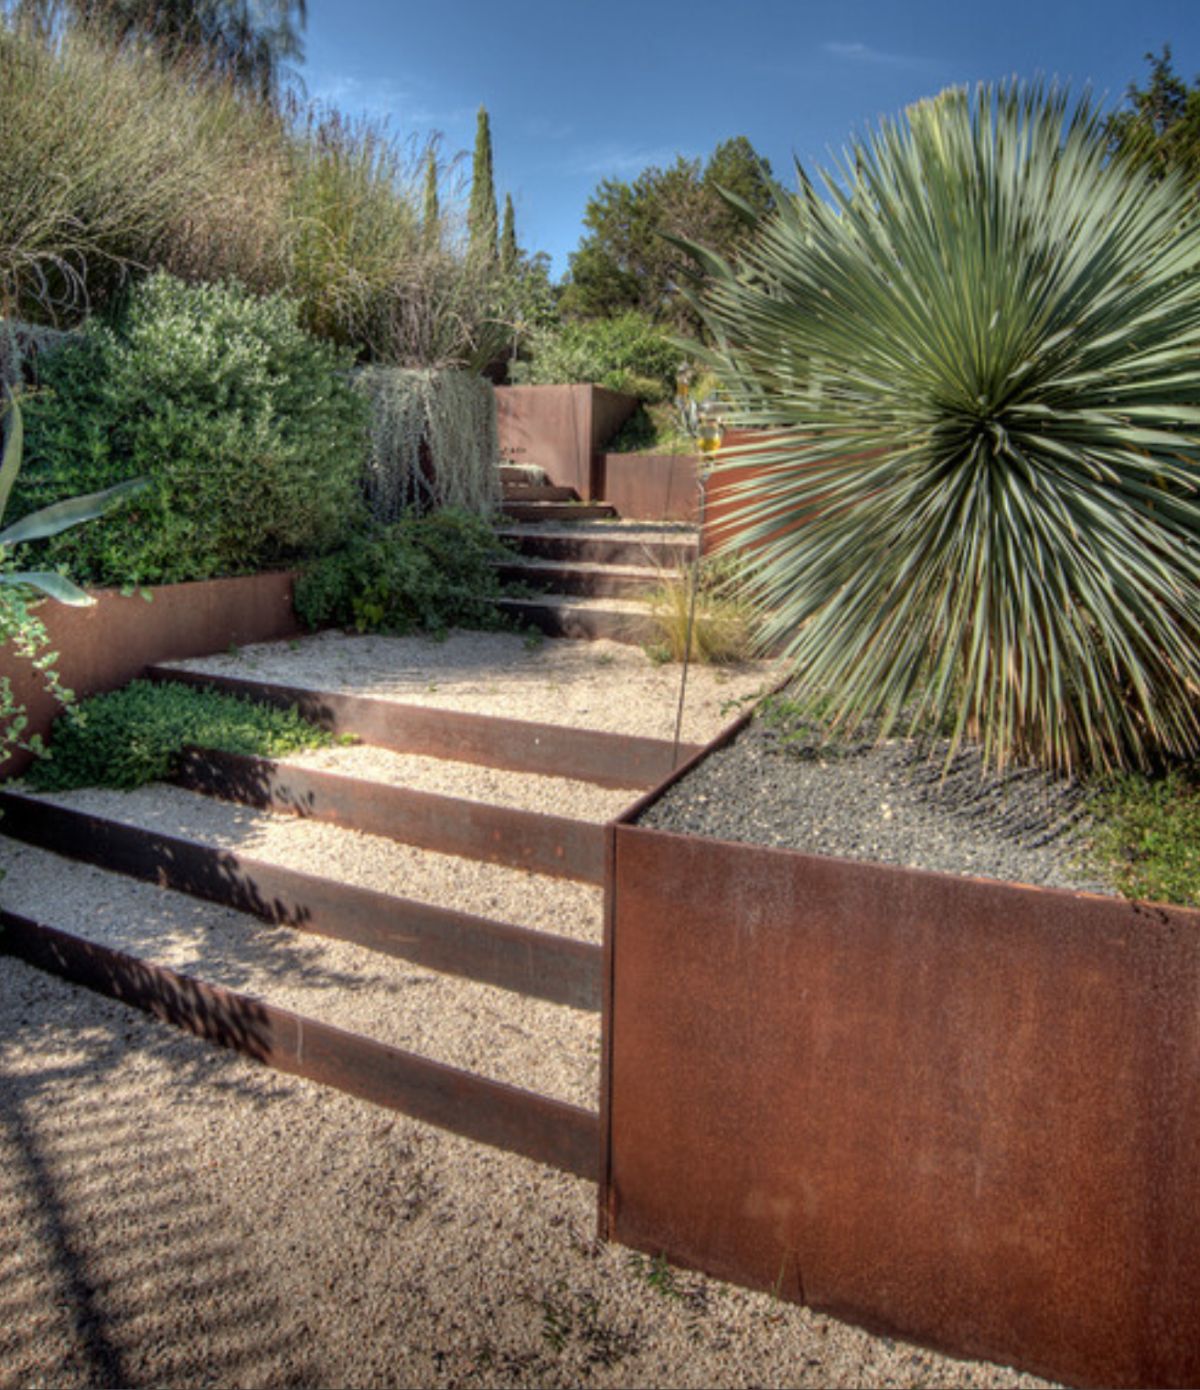 Grădină mediteraneană creată de Austin Landscape Architects & Designers, construcție realizată de D-Crain Design. Foto via The Impatient Gardener.